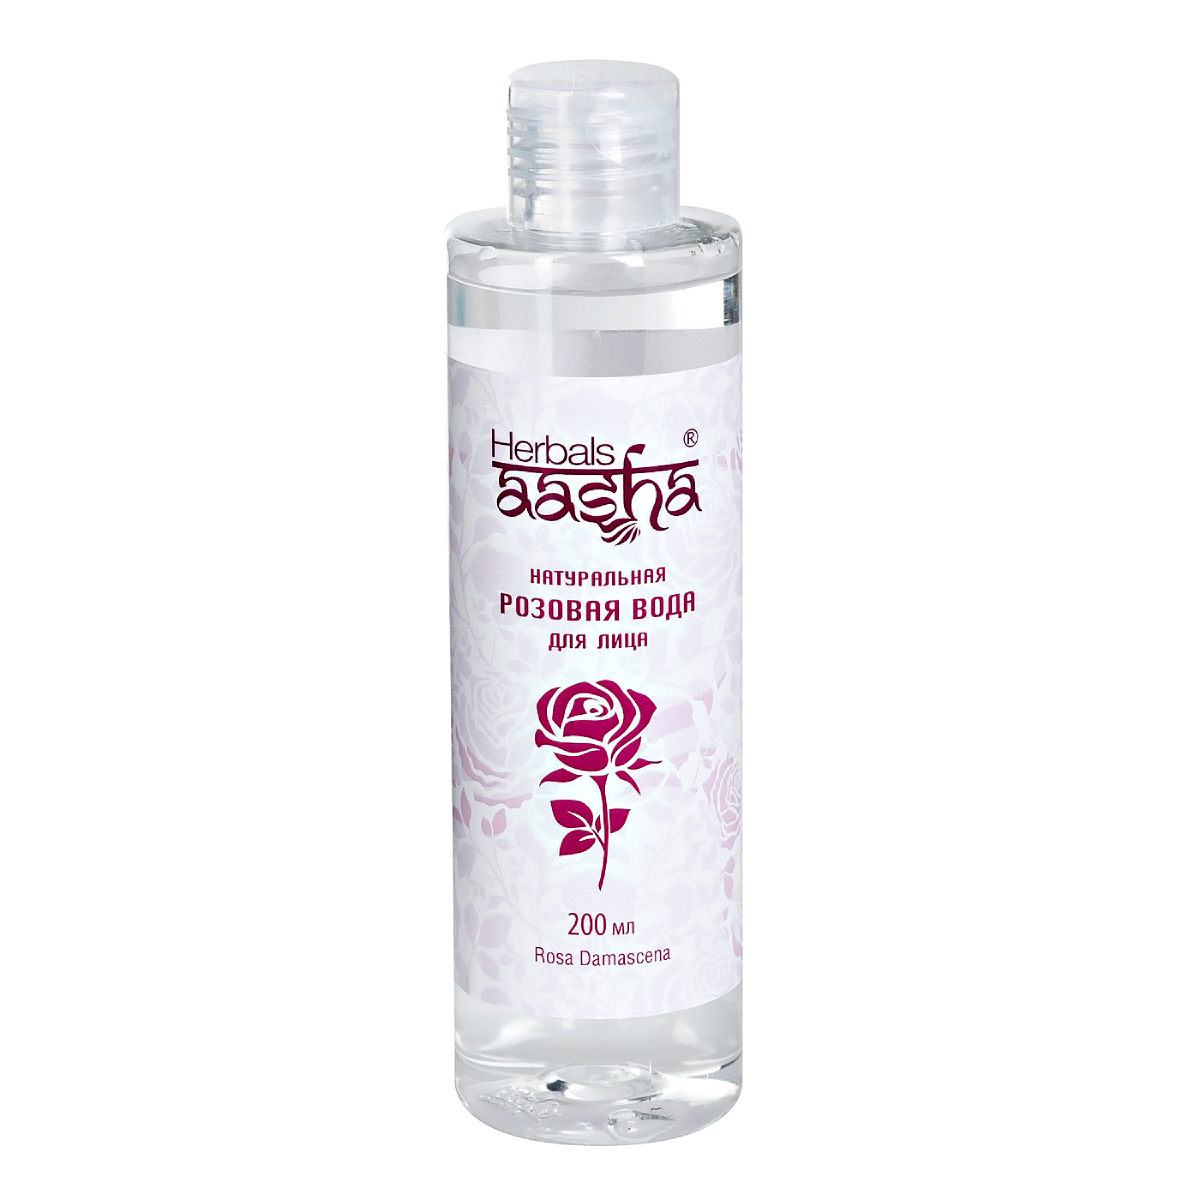 Натуральная розовая вода Aasha Herbals для лица, 200 мл натуральная розовая вода aasha herbals для лица 200 мл